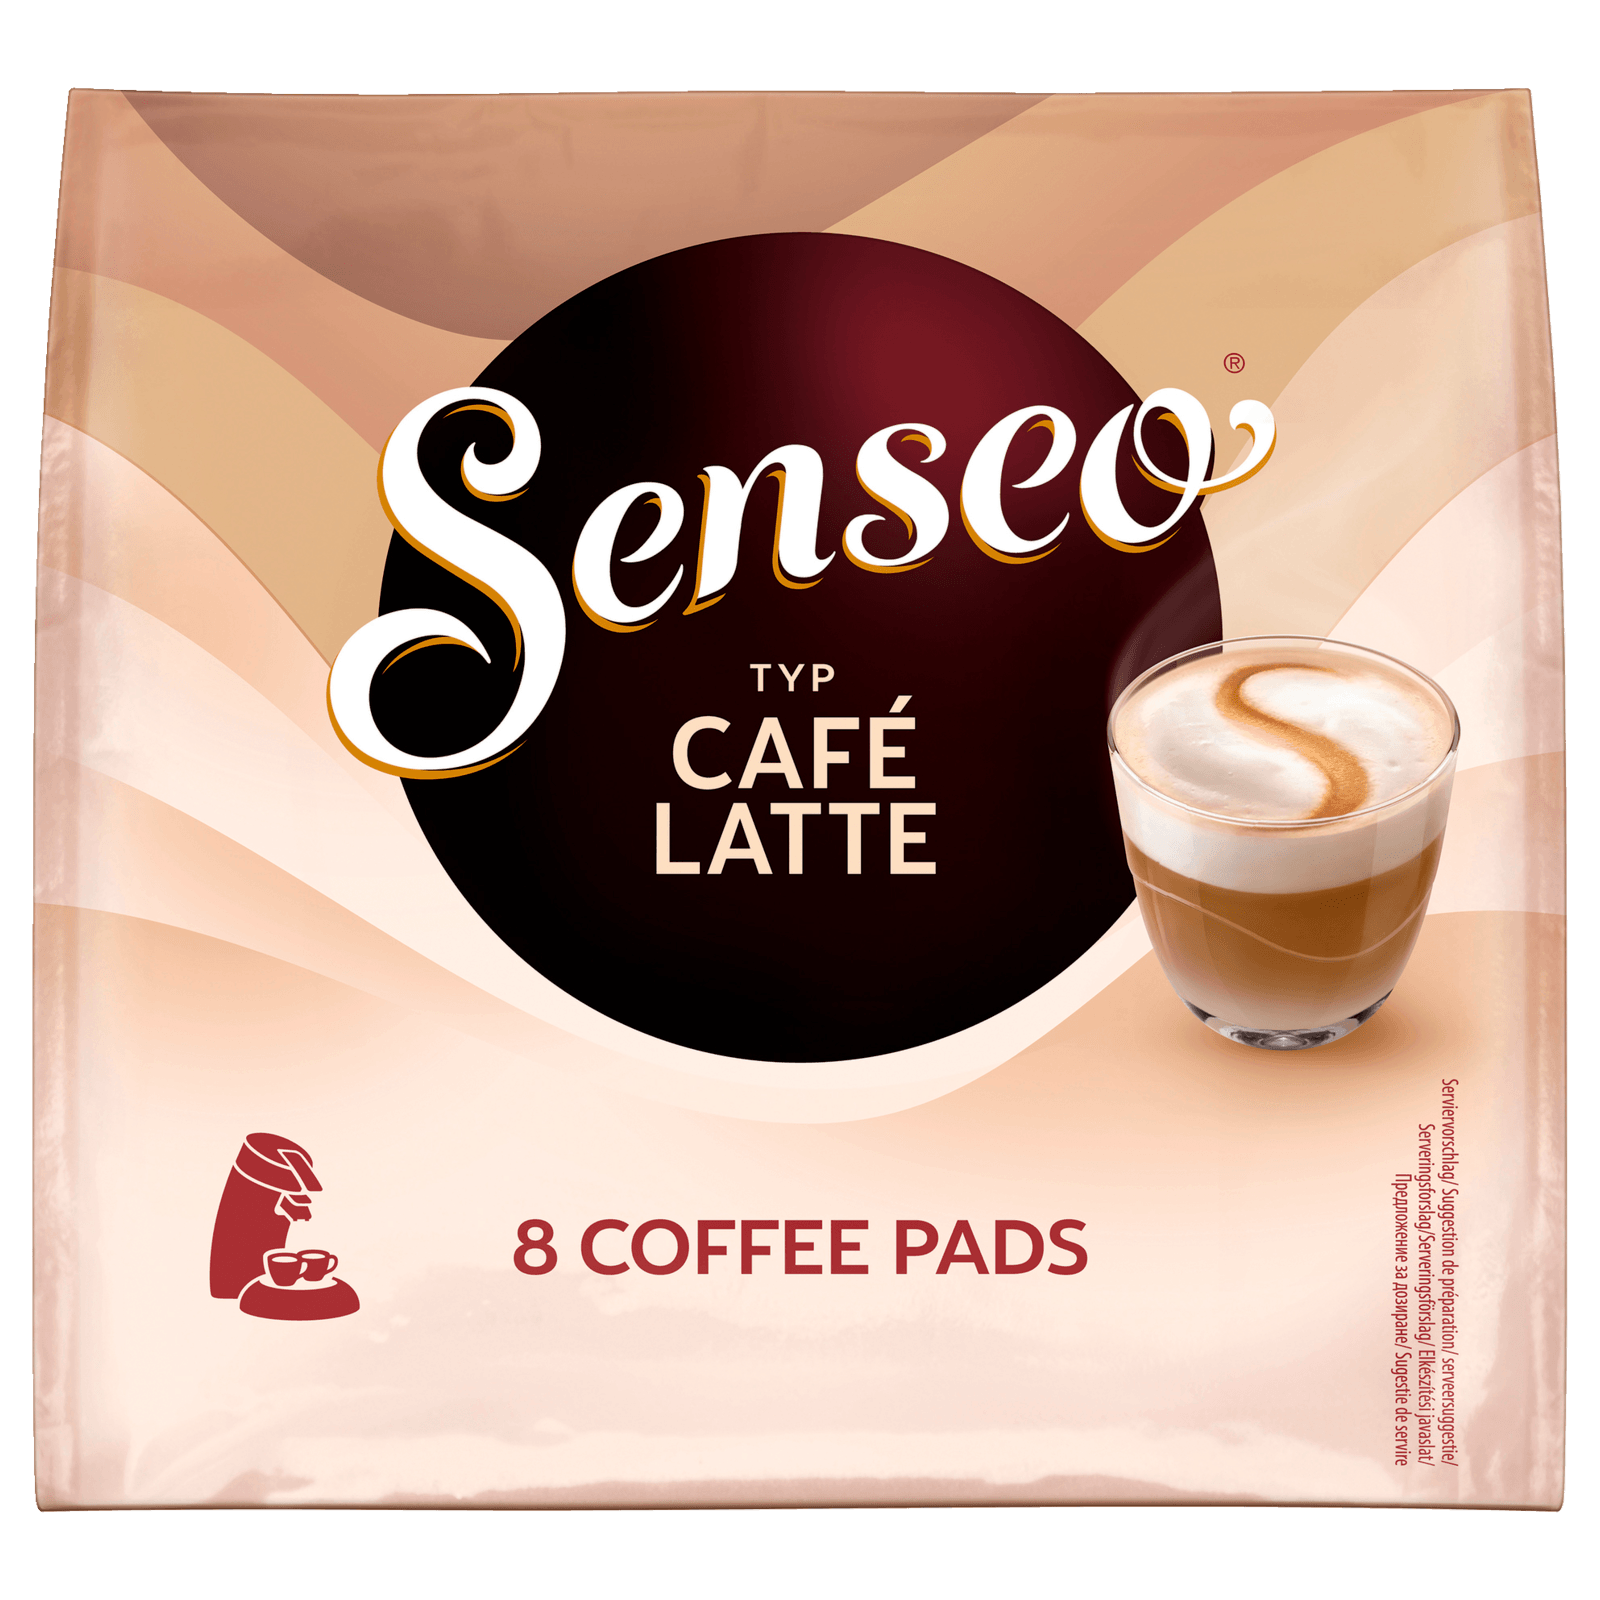 92g, online Senseo bei Latte Café 8 Pads Kaffeepads REWE bestellen!